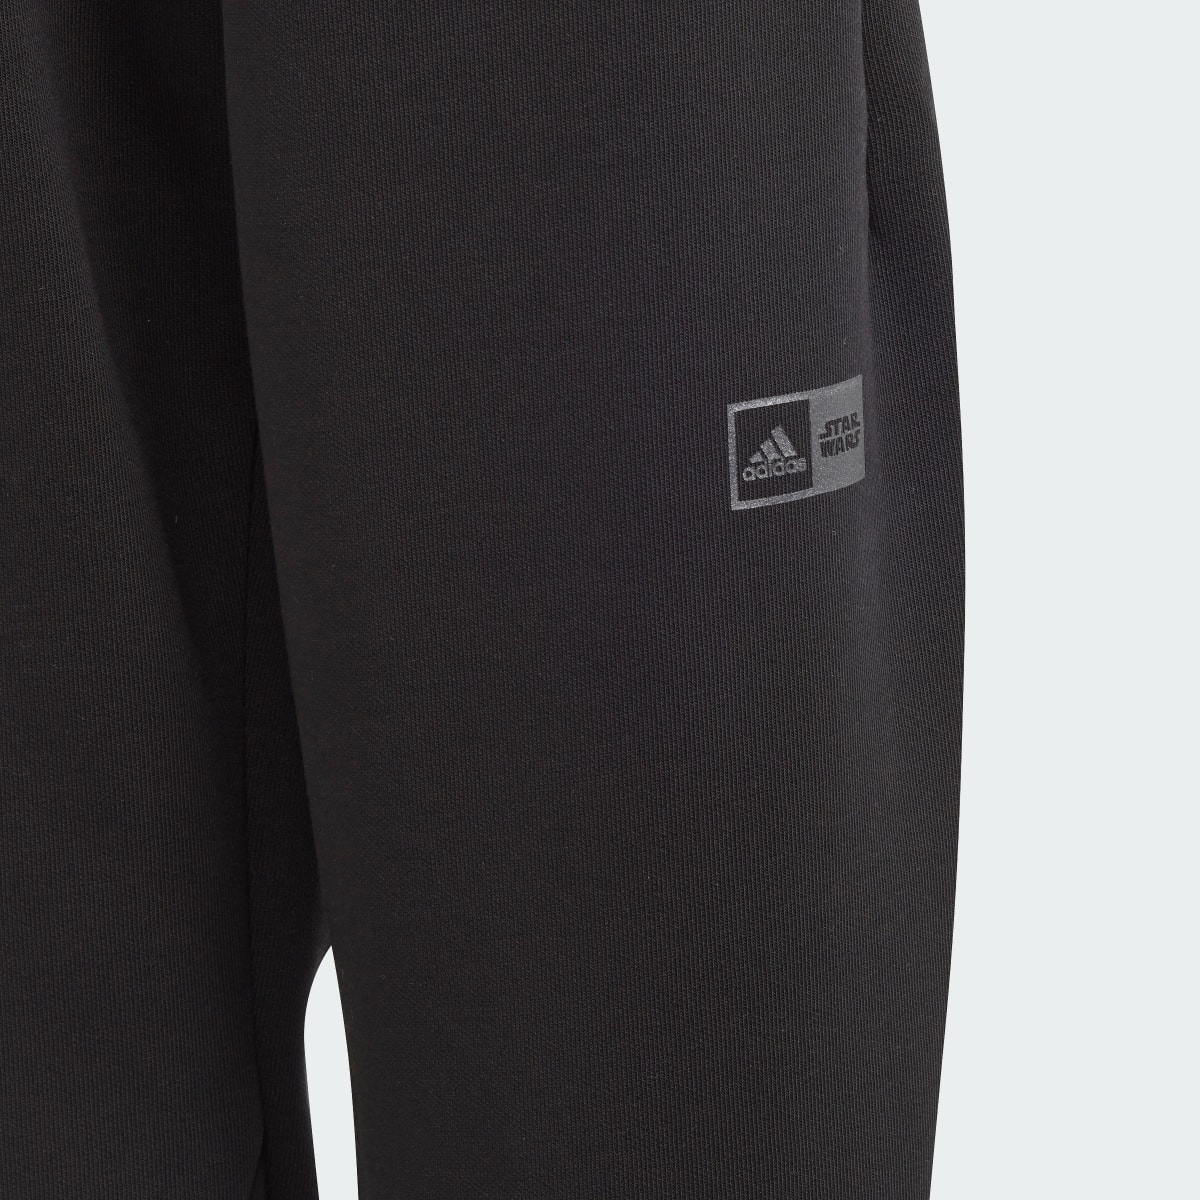 Adidas Ensemble sweat-shirt ras-du-cou et pantalon sportswear adidas x Star Wars Z.N.E.. 9